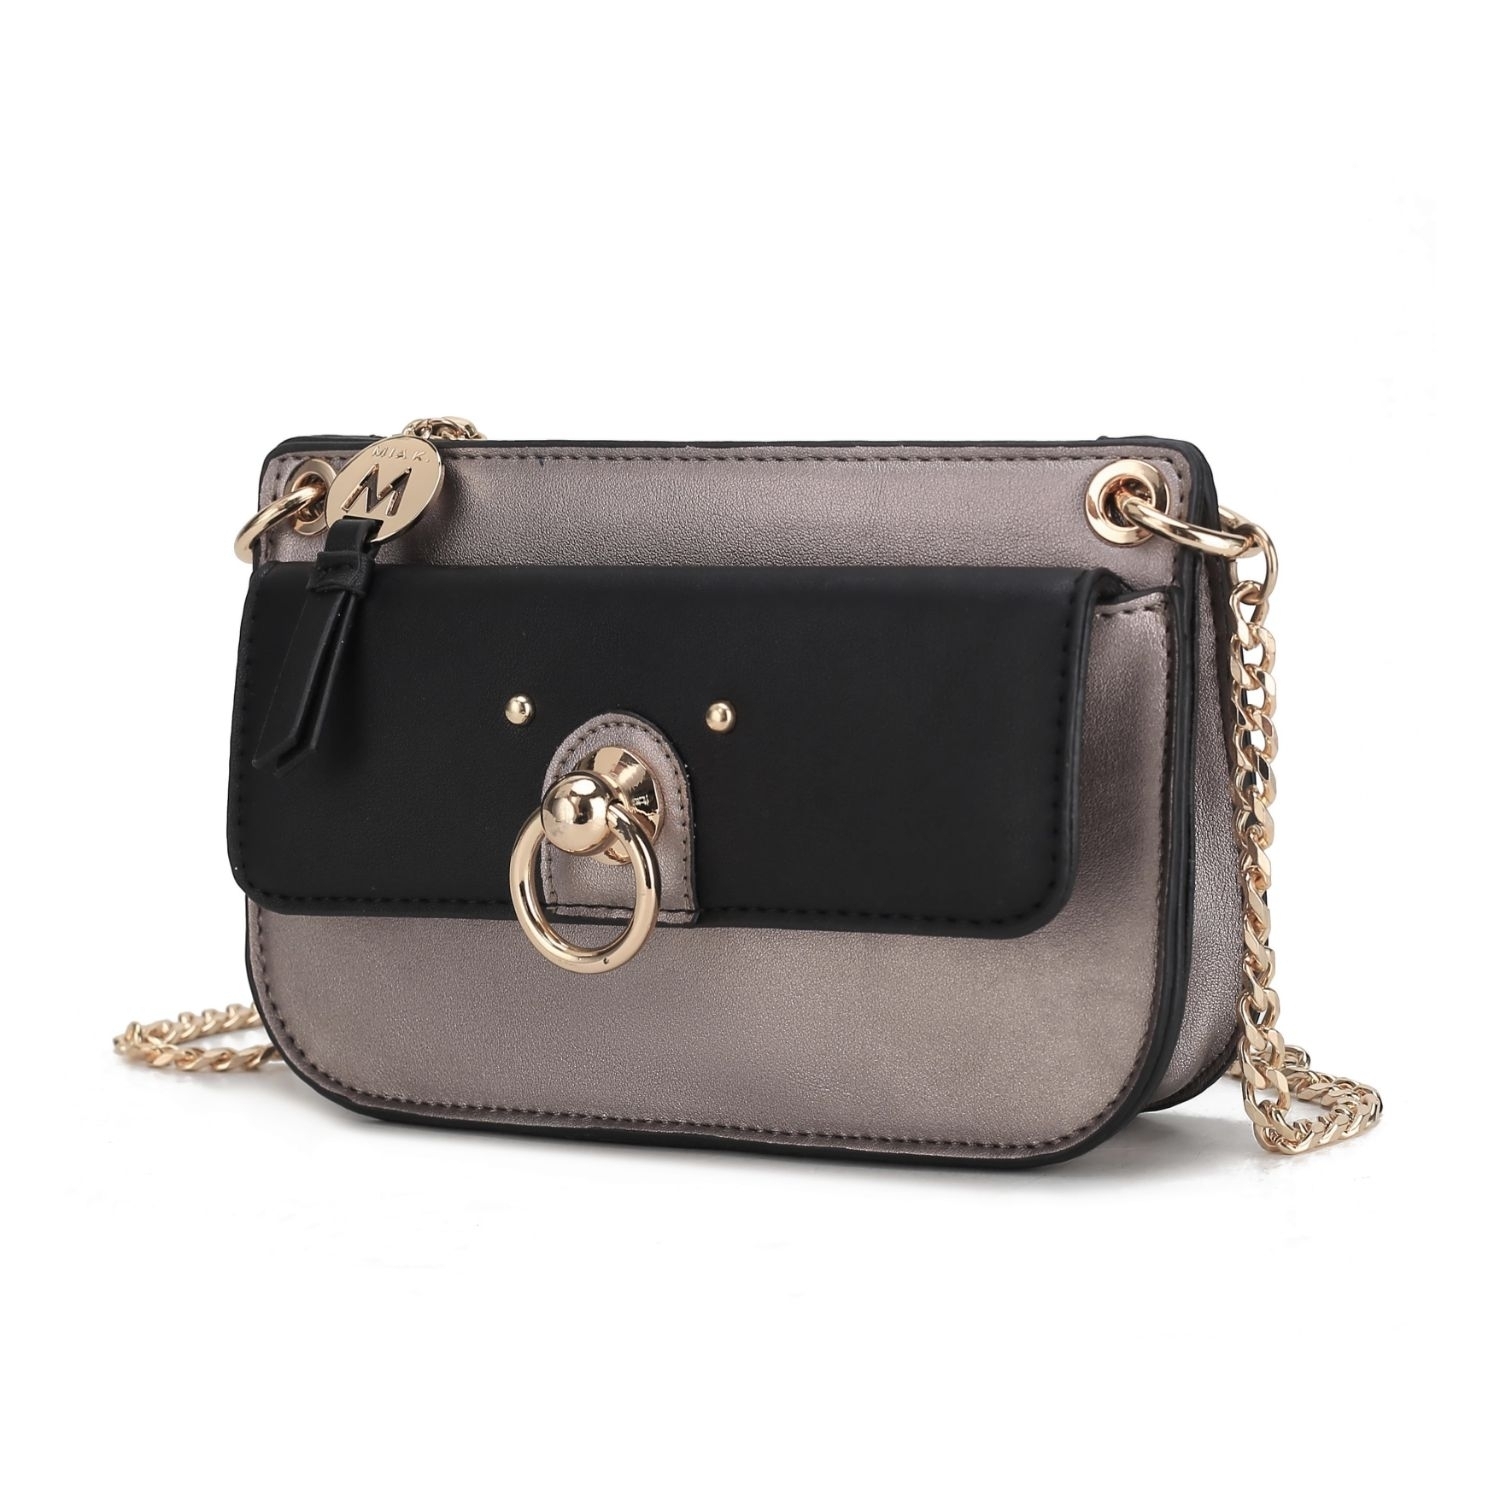 MKF Collection Jill Crossbody Handbag For Women Vegan Leather Medium Messenger Handbag By Mia K. - Pewter-black